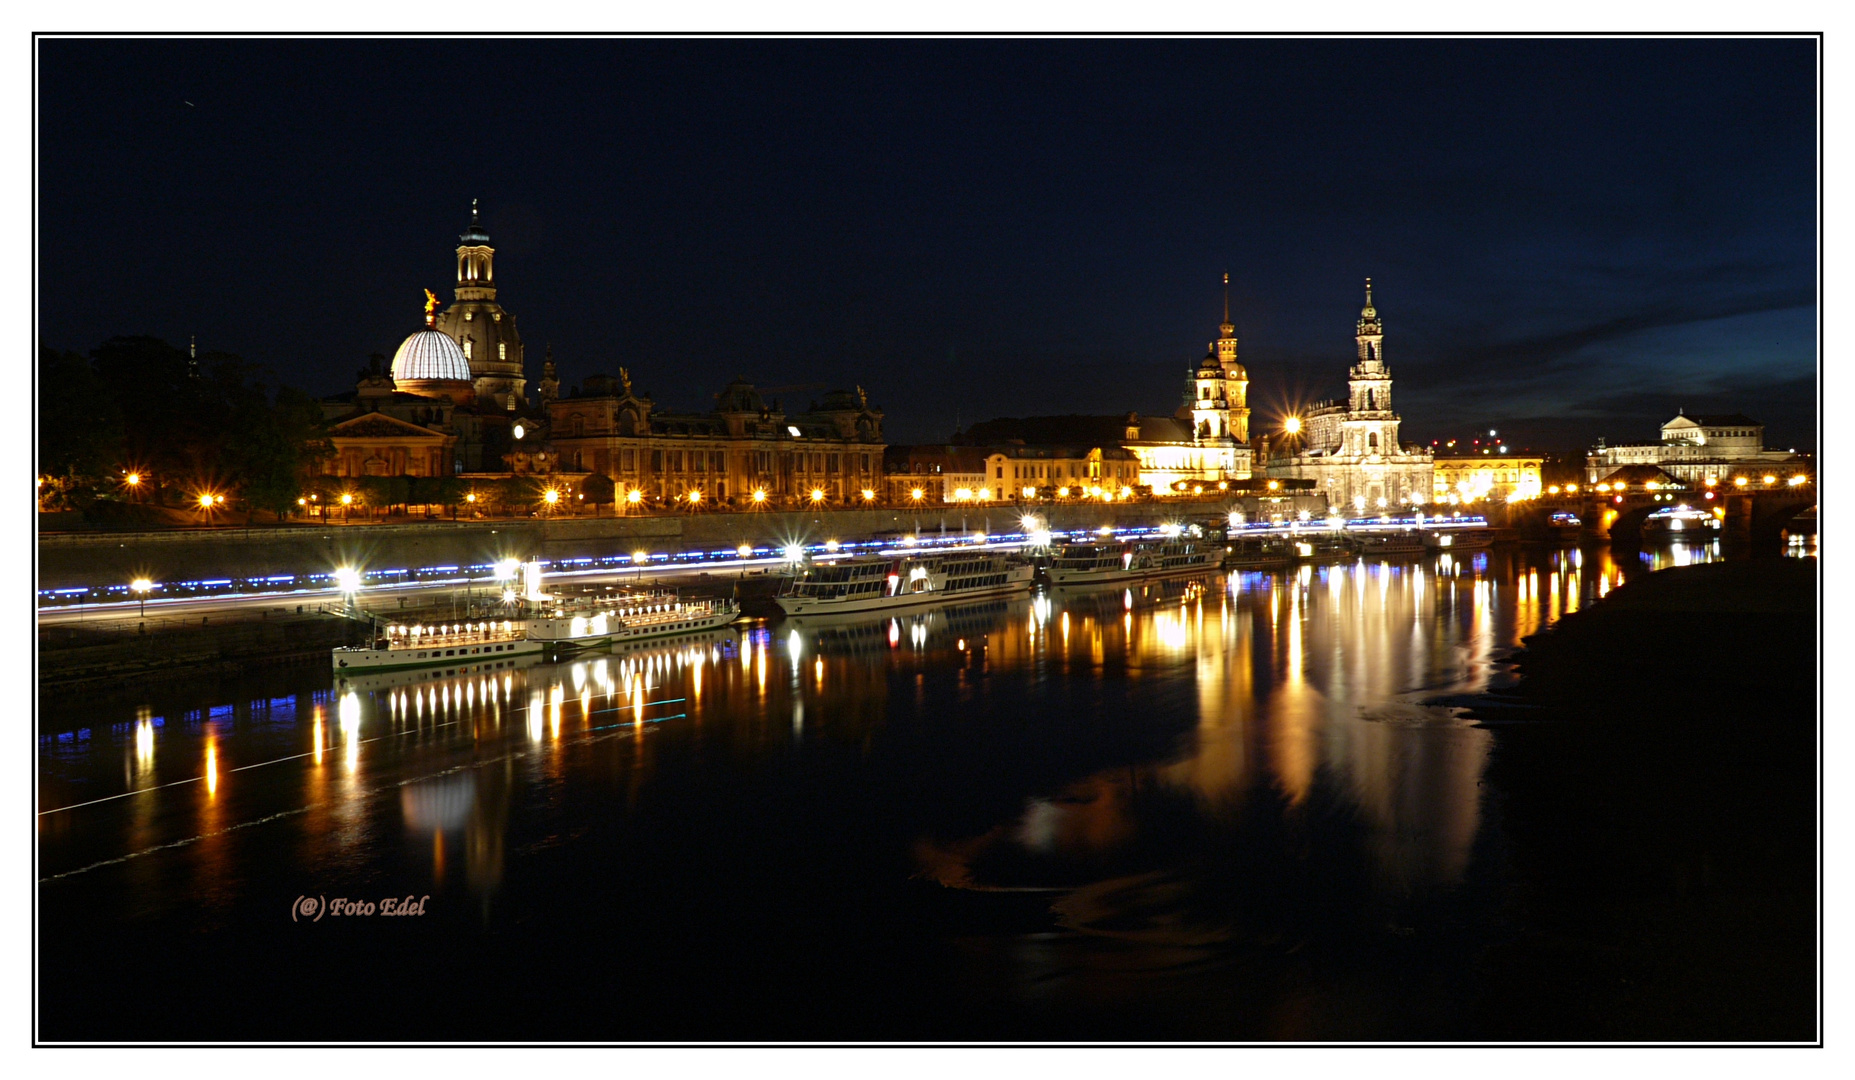 Dresden zur blauen Stunde 2